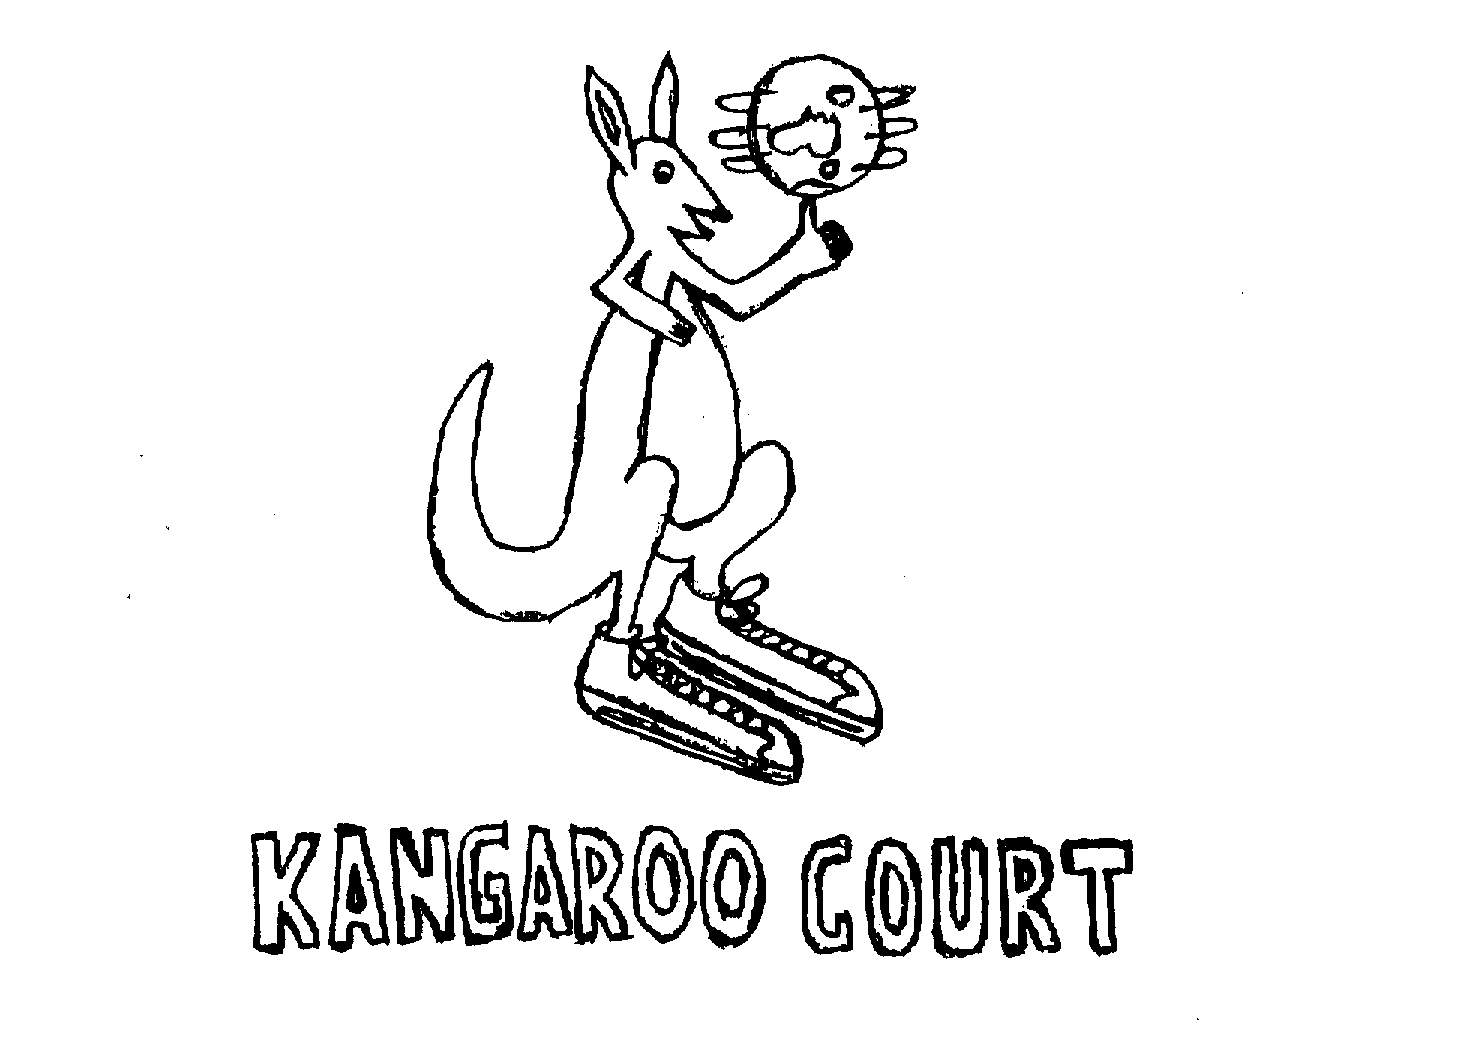 KANGAROO COURT